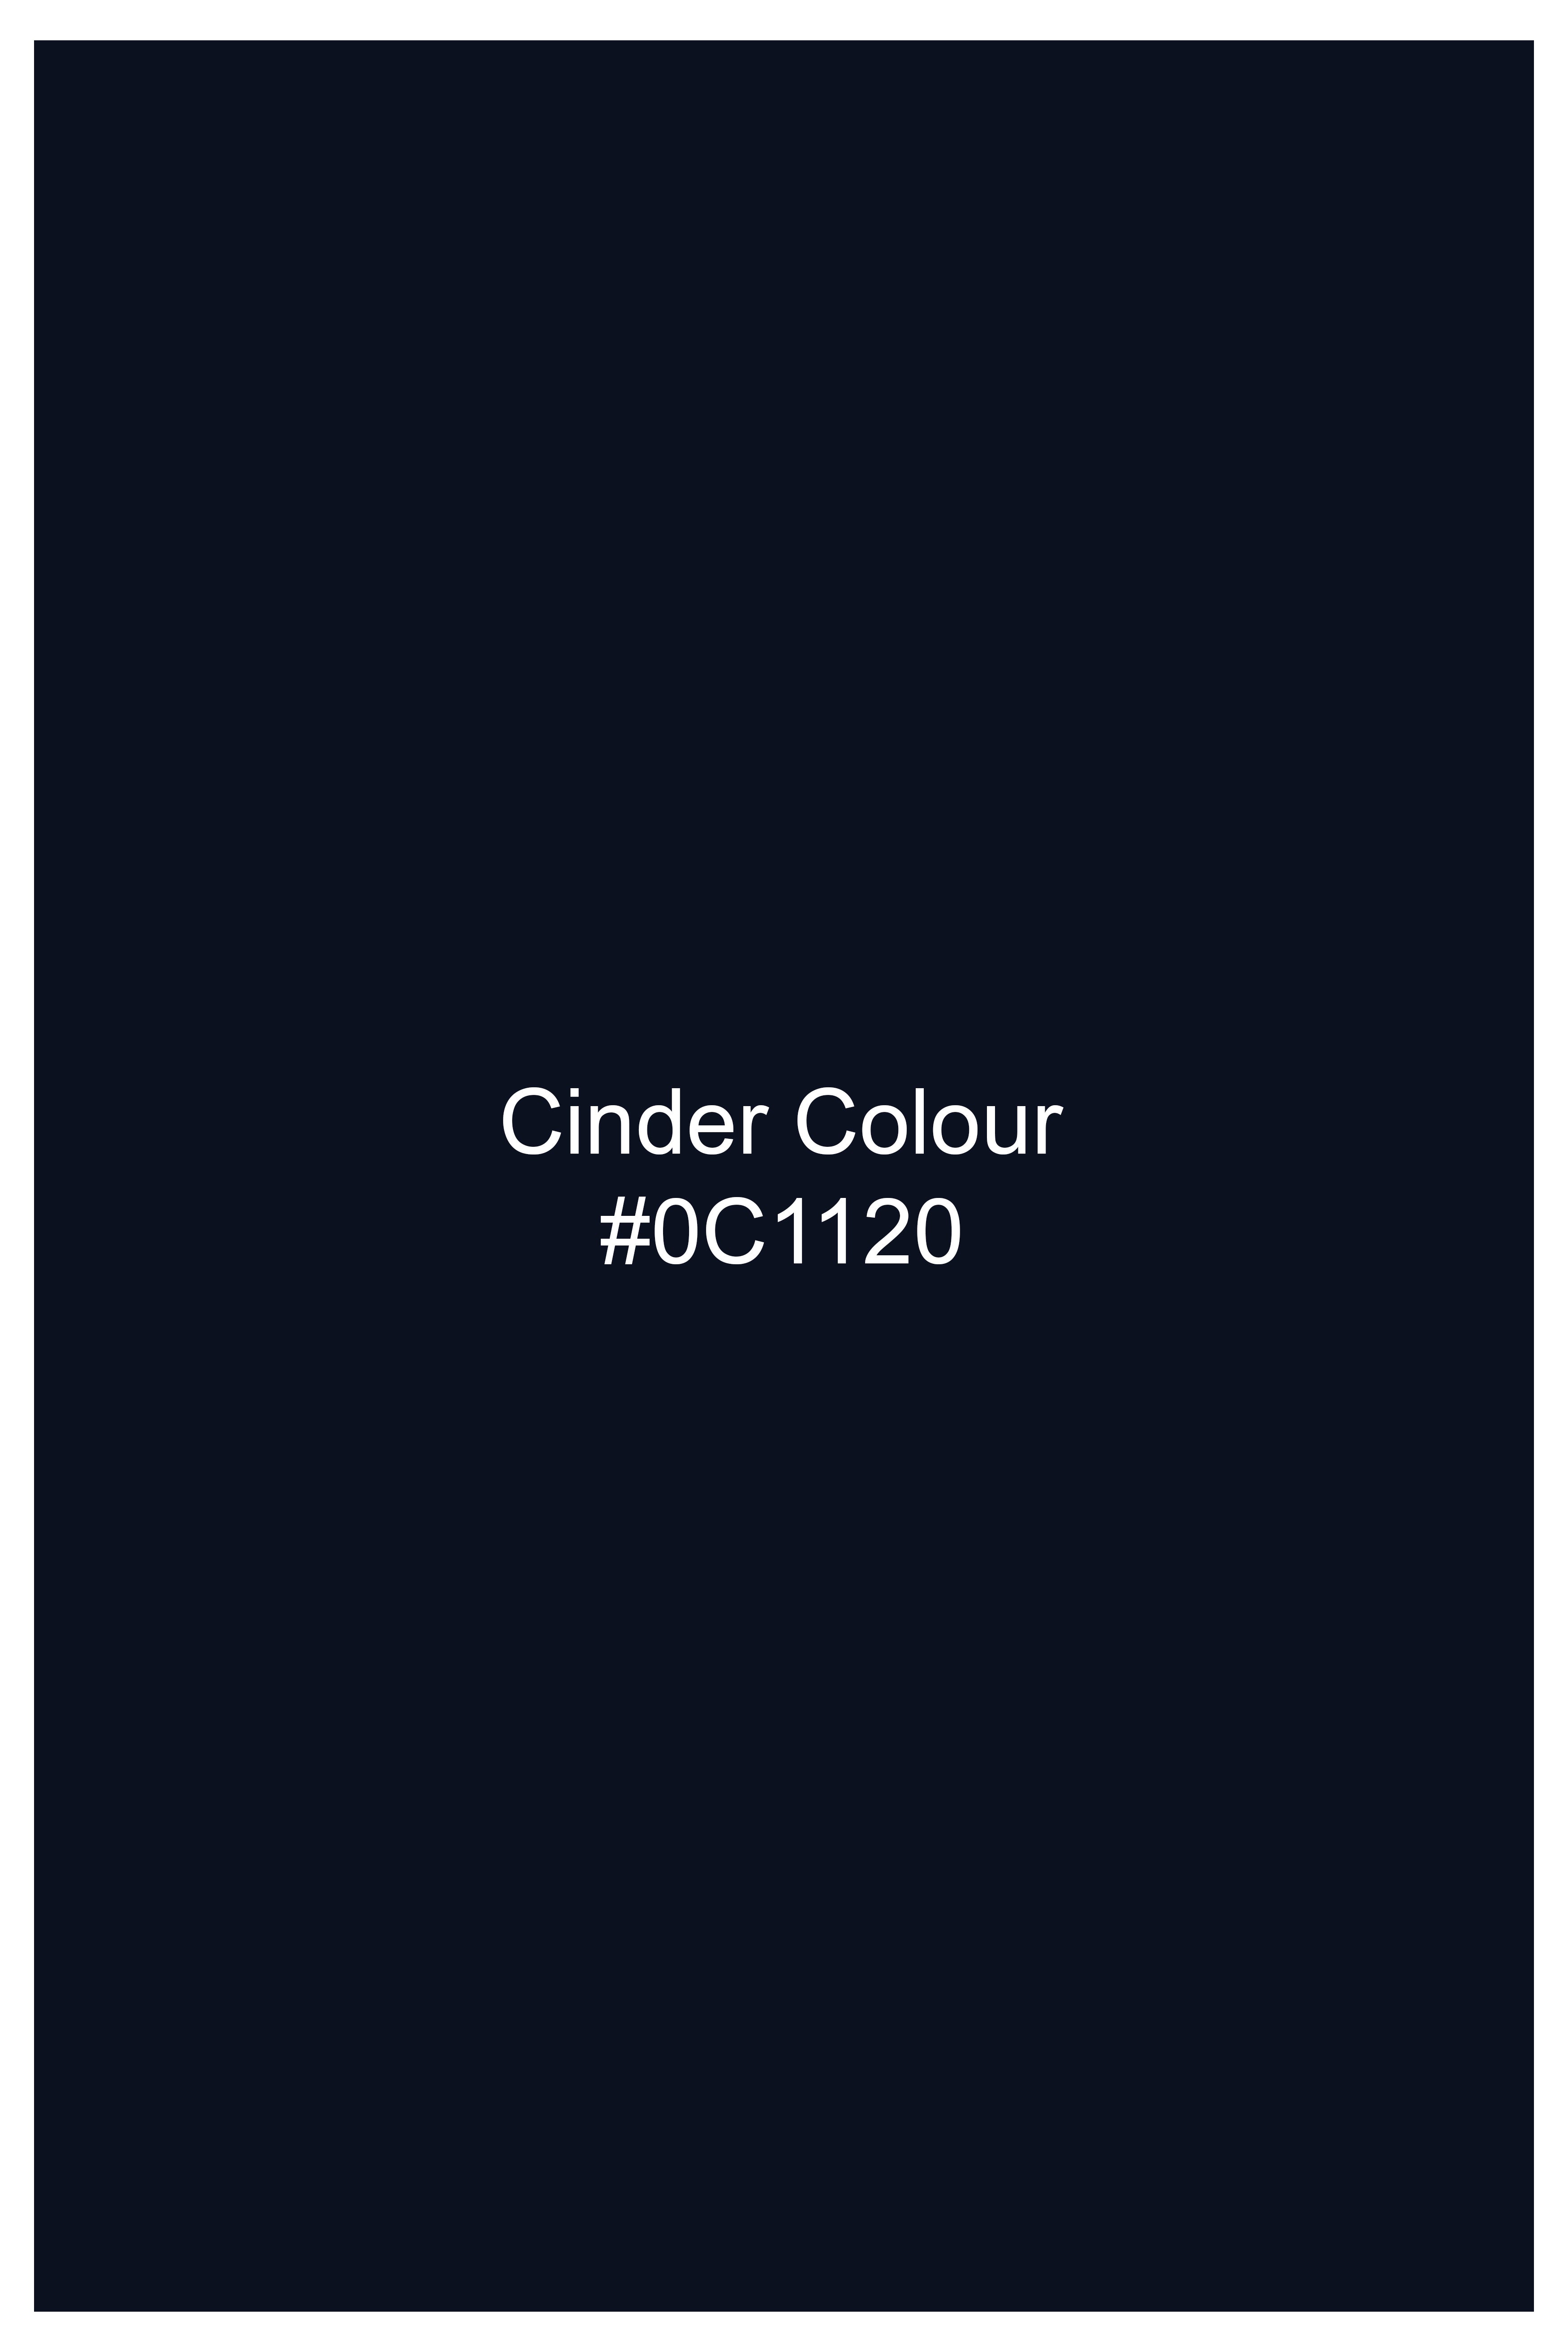 Cinder Blue Dobby Textured Premium Giza Cotton Shirt 11720-BLE-38, 11720-BLE-H-38, 11720-BLE-39, 11720-BLE-H-39, 11720-BLE-40, 11720-BLE-H-40, 11720-BLE-42, 11720-BLE-H-42, 11720-BLE-44, 11720-BLE-H-44, 11720-BLE-46, 11720-BLE-H-46, 11720-BLE-48, 11720-BLE-H-48, 11720-BLE-50, 11720-BLE-H-50, 11720-BLE-52, 11720-BLE-H-52